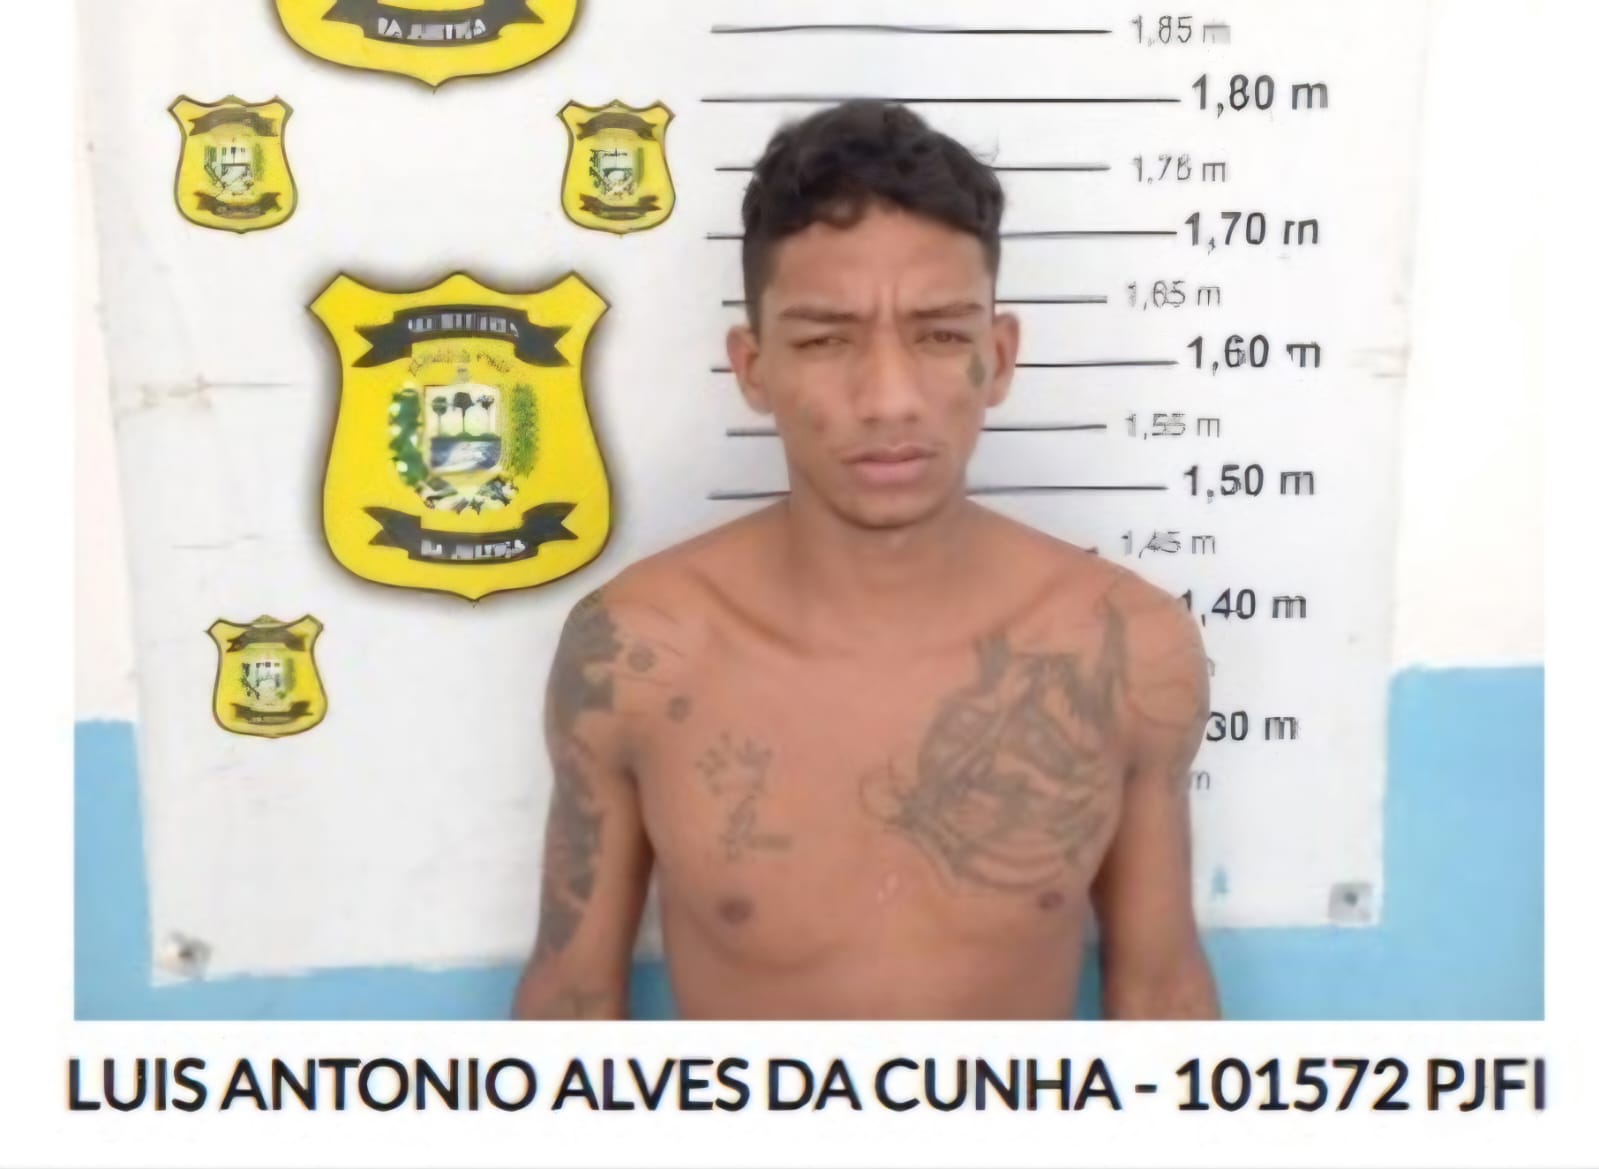 Luís Antônio Alves da Cunha